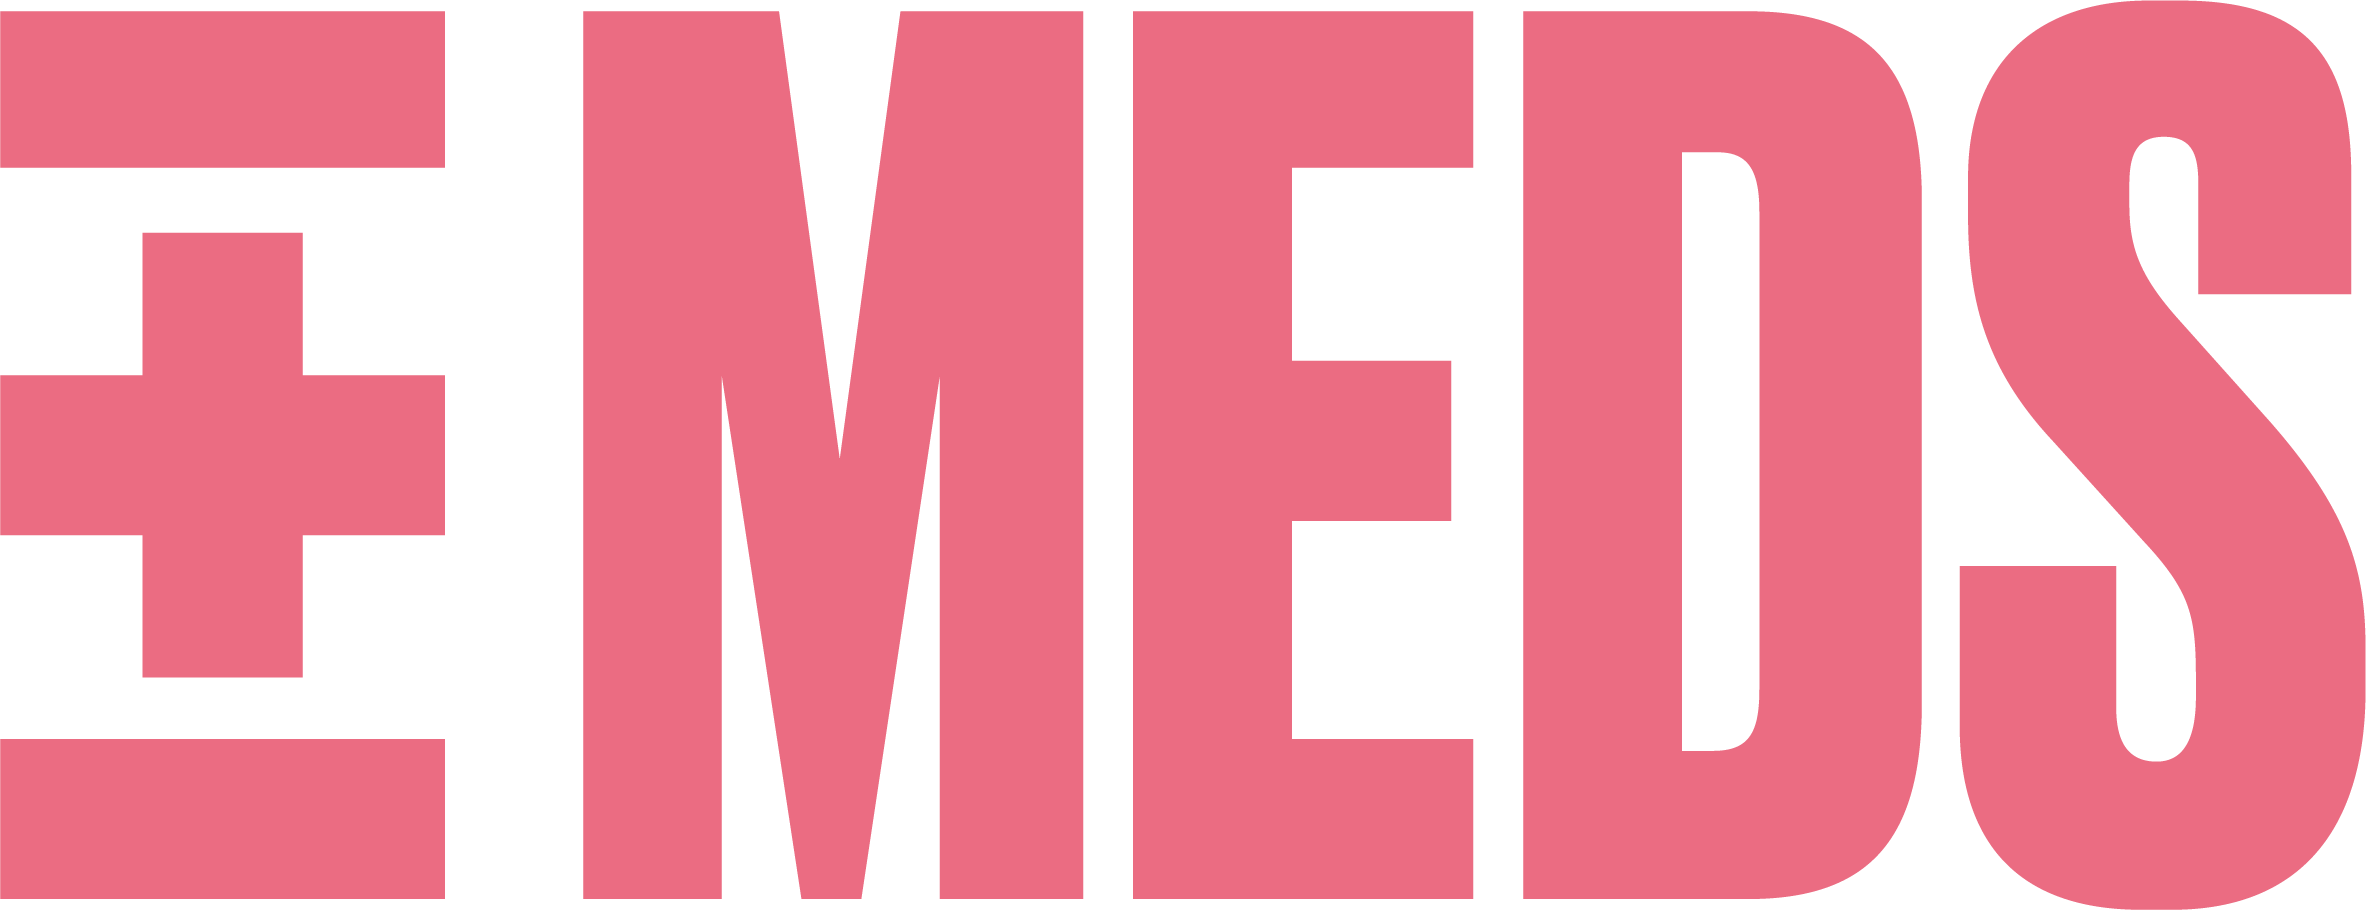 Meds Logo